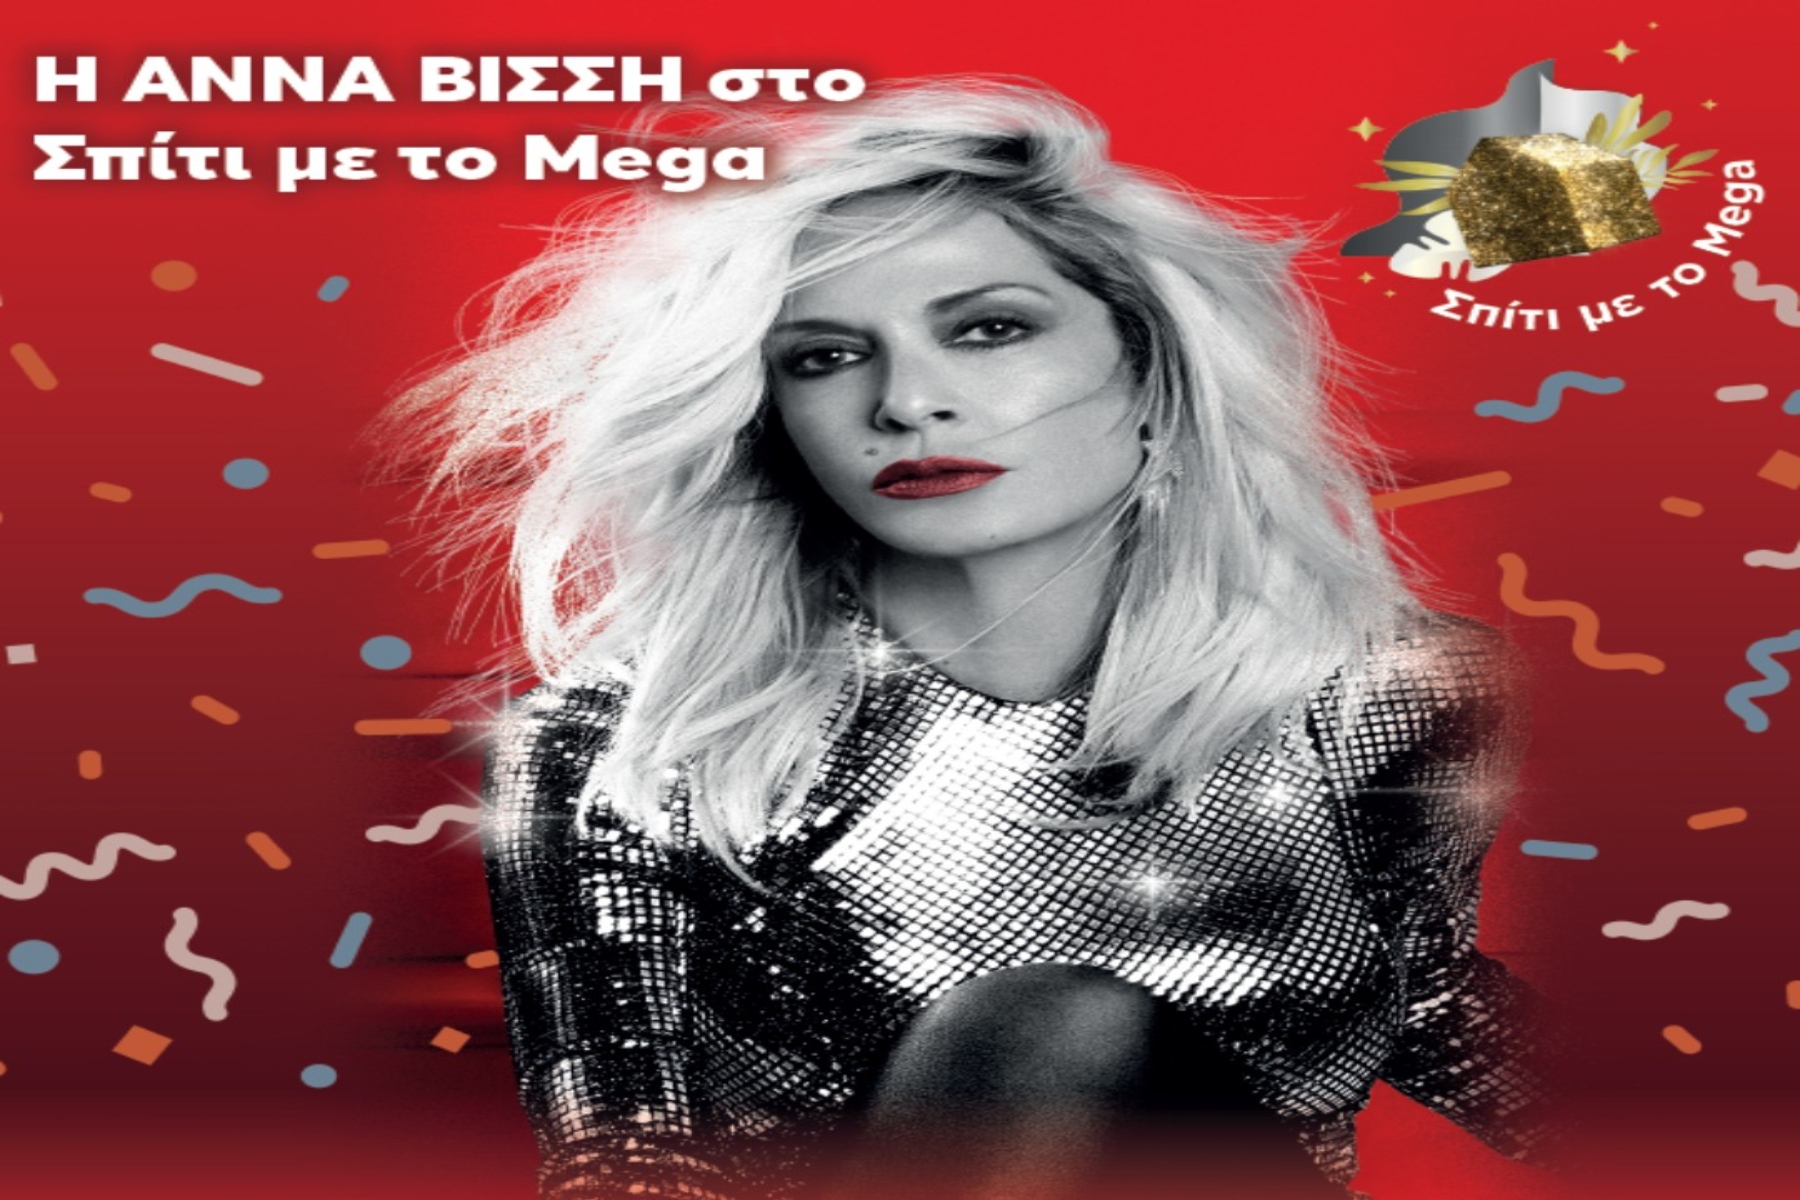 Άννα Βίσση: Η απόλυτη Ελληνίδα σταρ στο “Σπίτι με το Mega” [trailer]